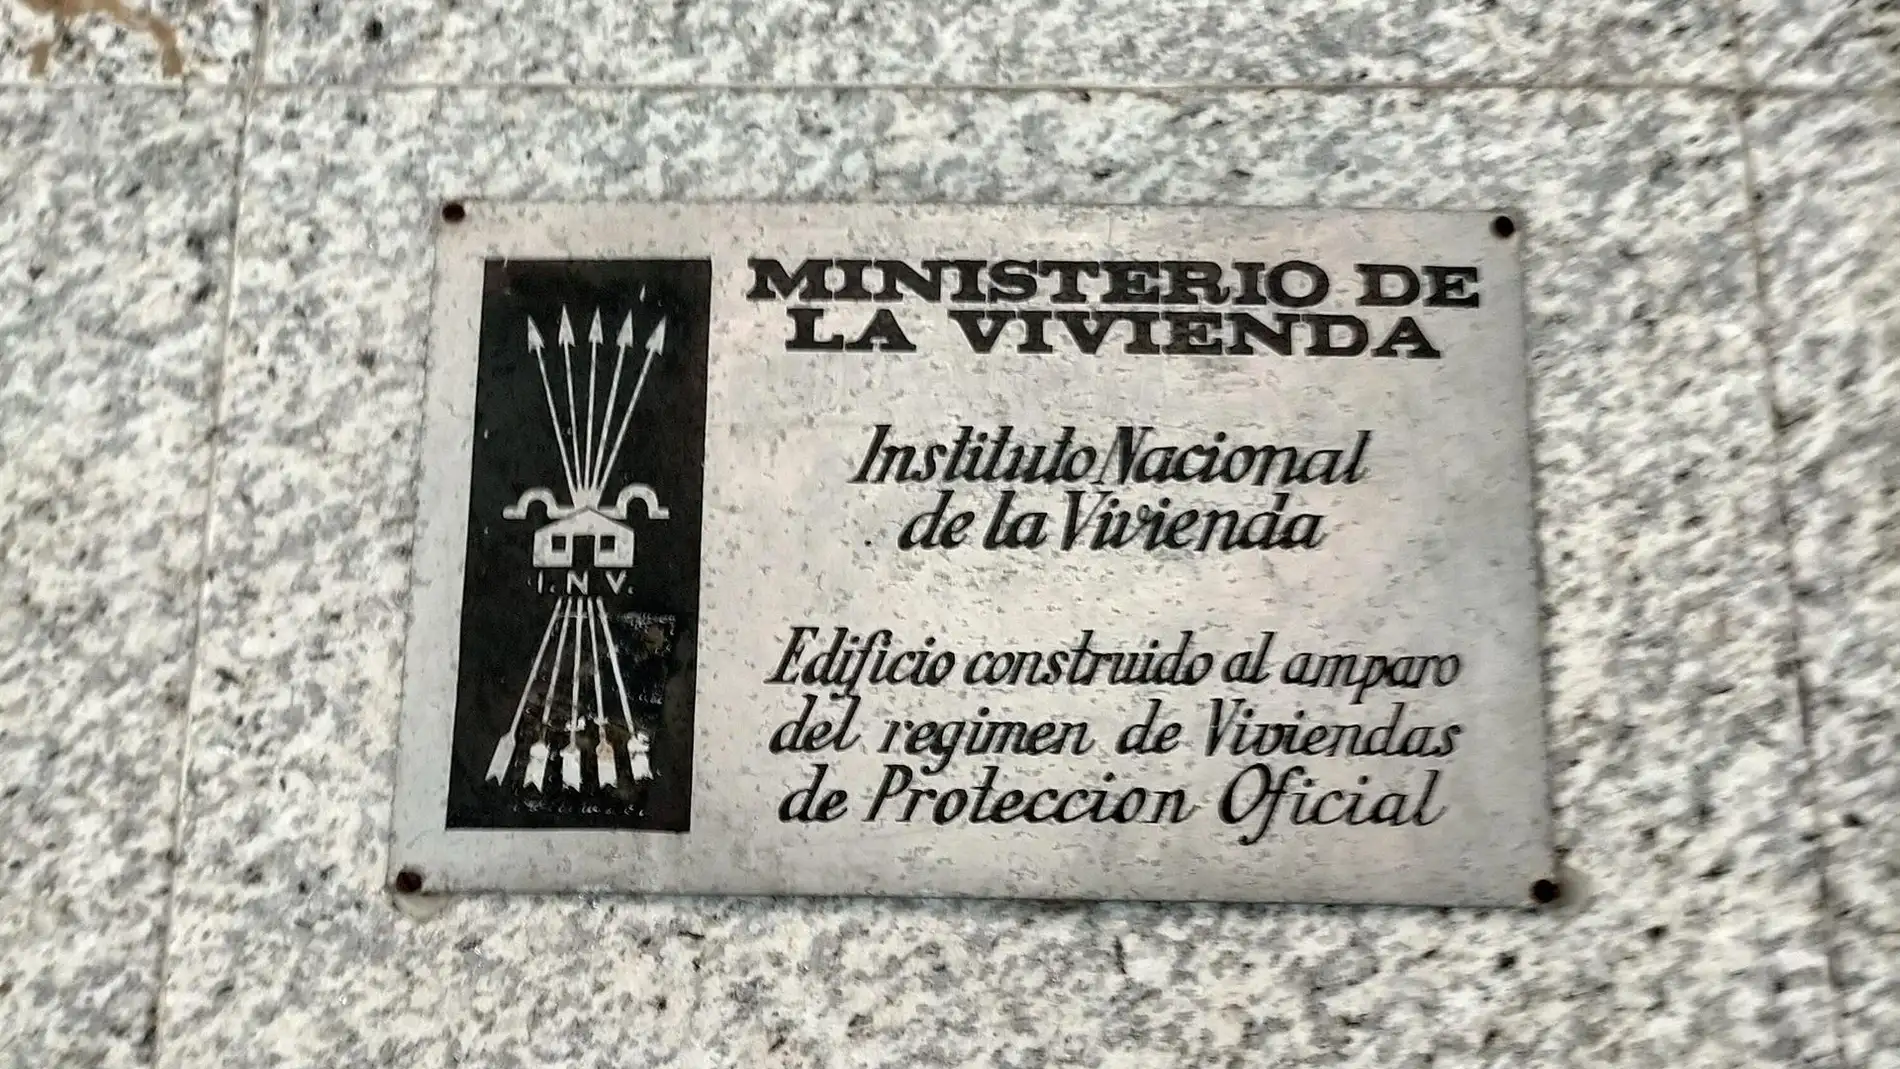 Solicitan al Ayuntamiento de Cáceres la retirada de vestigios franquistas como la Cruz, placas e inscripciones 